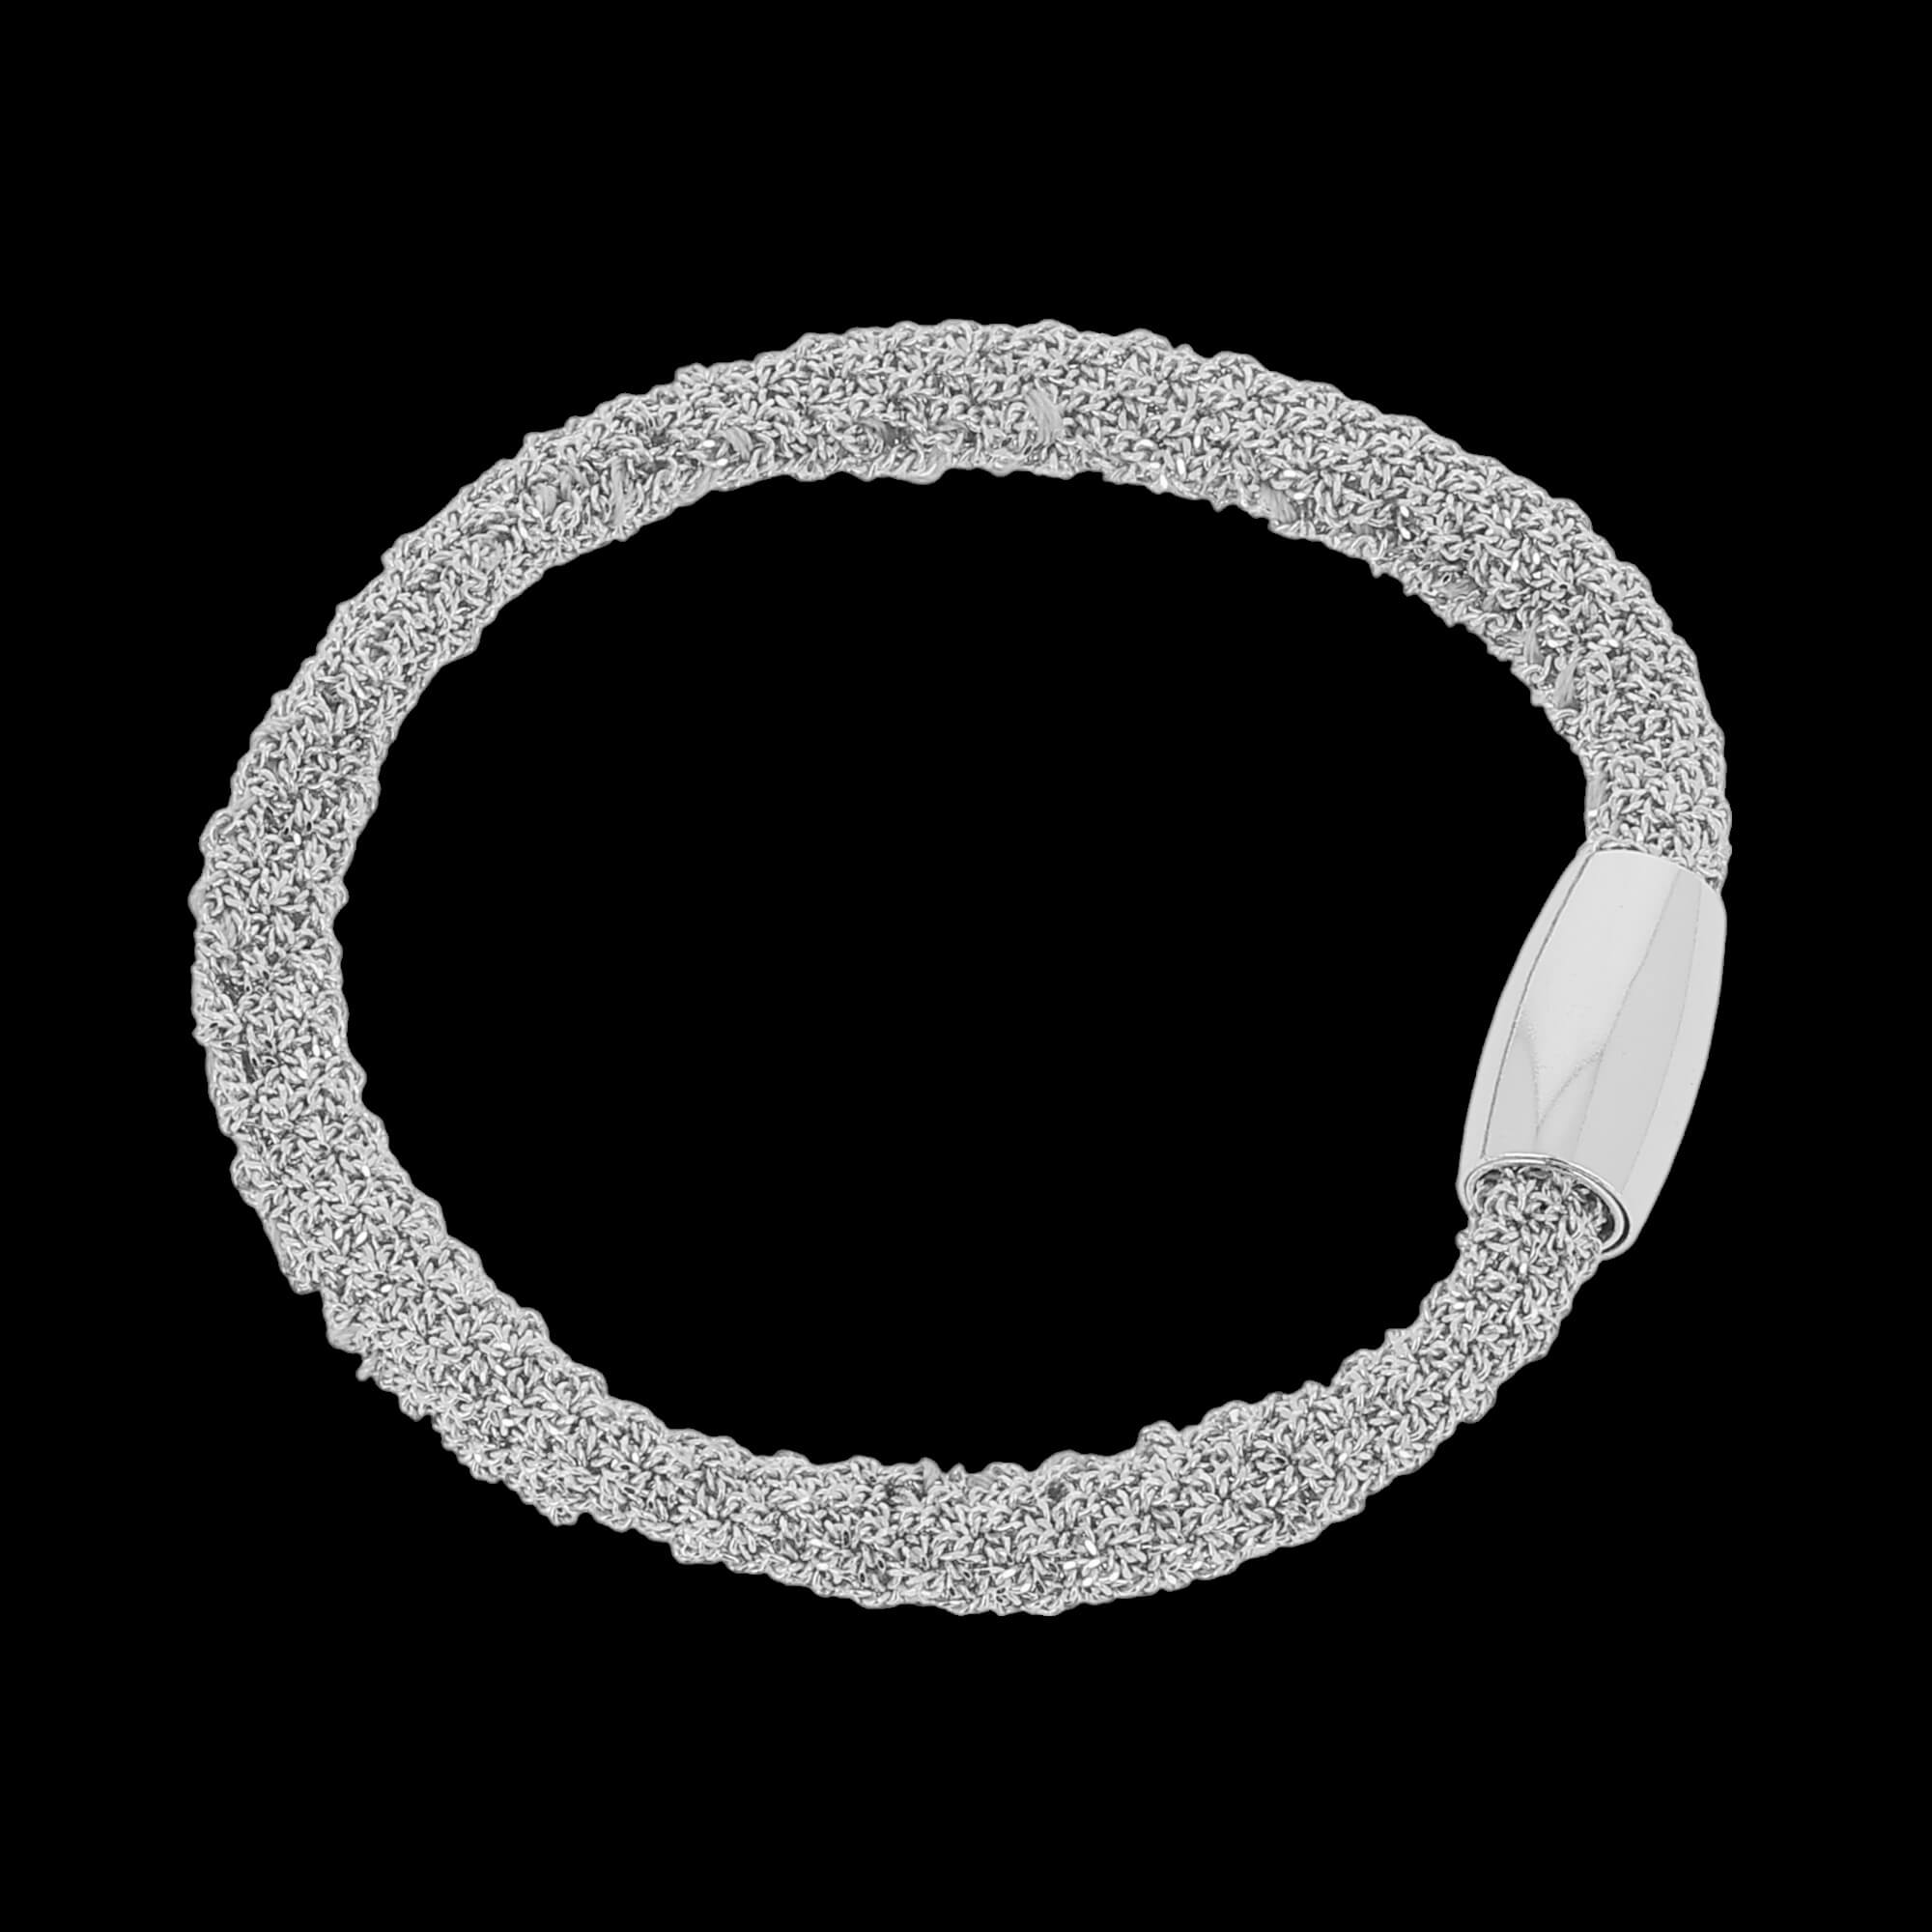 Narrow silver interwoven bracelet / heavier